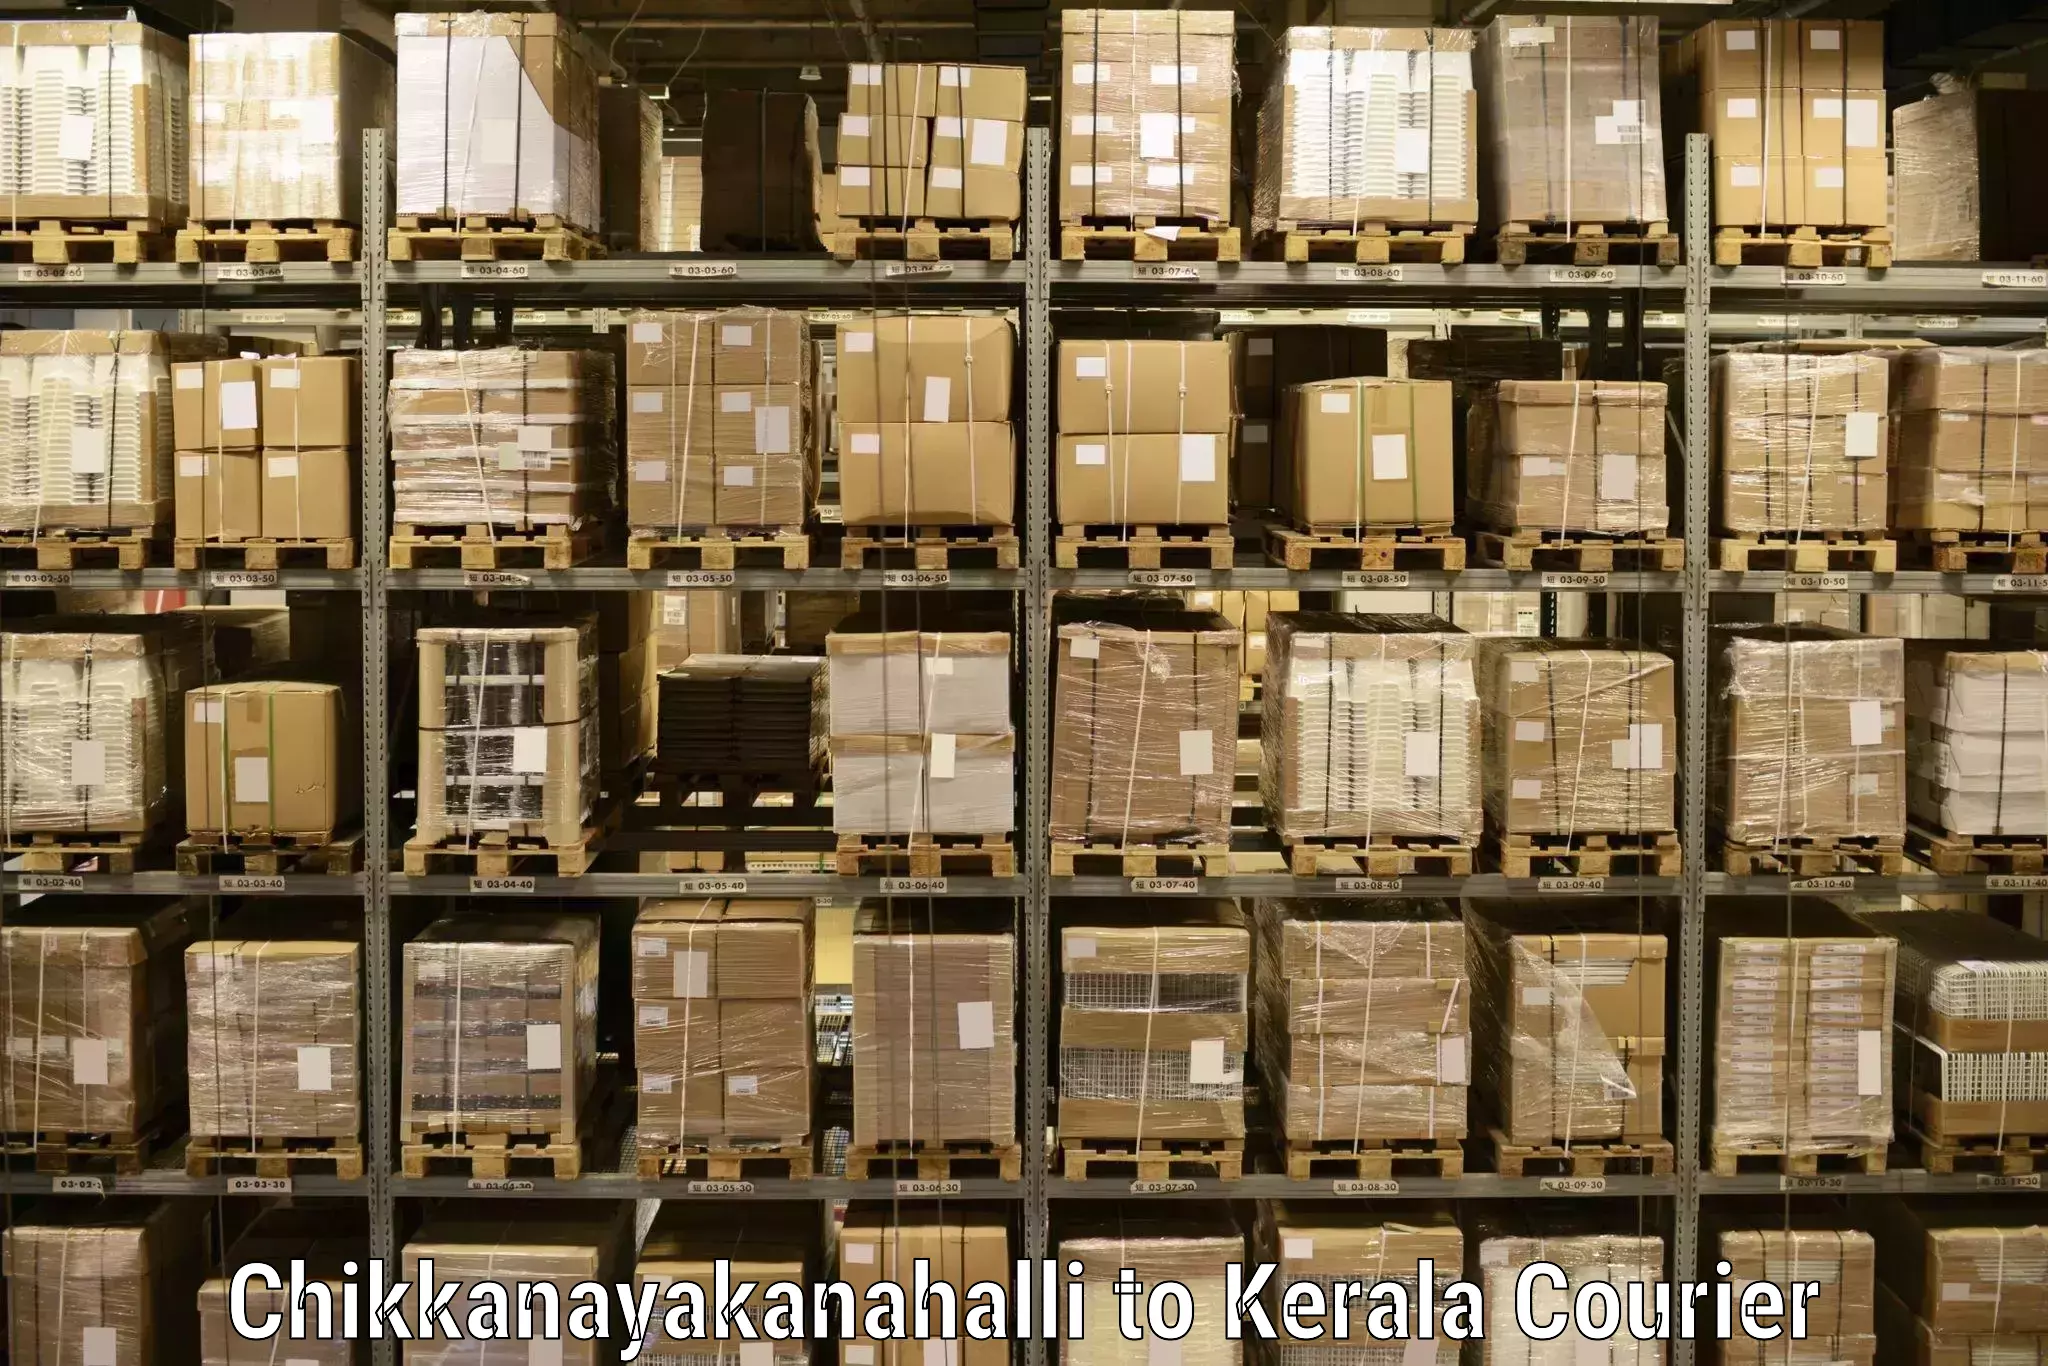 24-hour courier service Chikkanayakanahalli to Palai